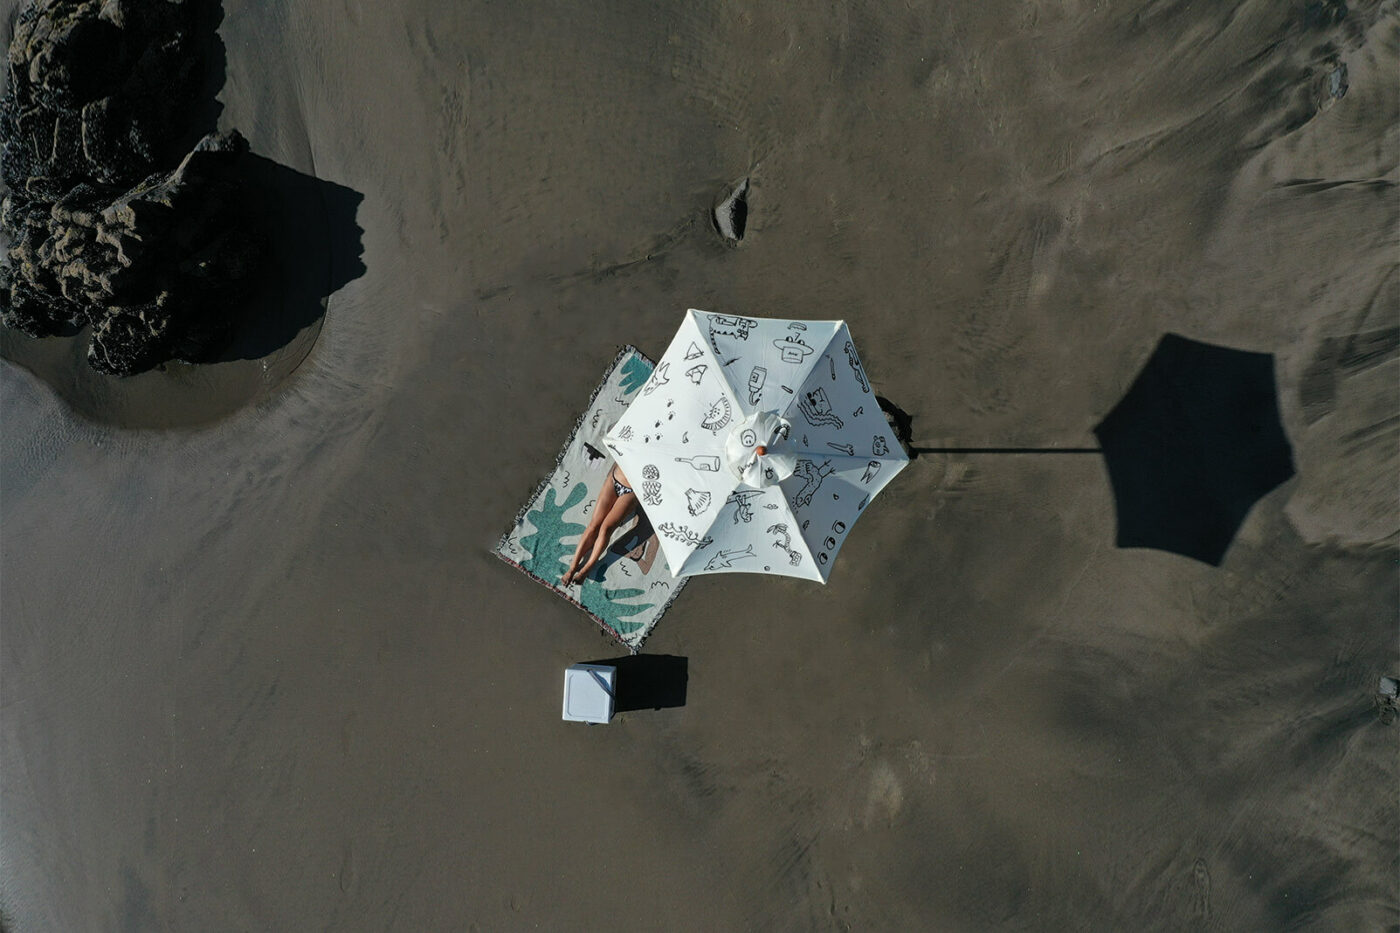 Sun shade, hand-drawn beach umbrella (Muriwai Beach, New Zealand)